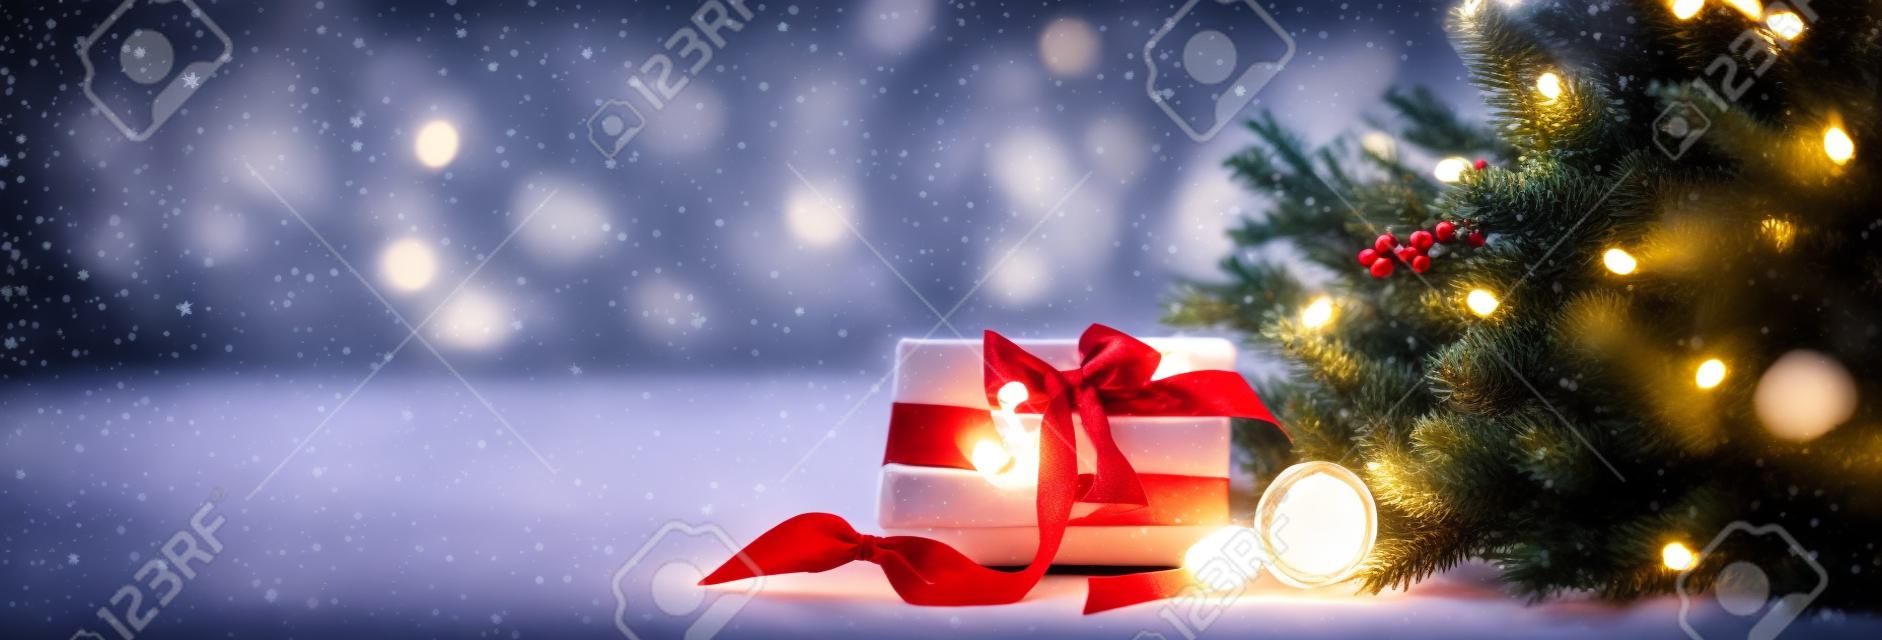 Weihnachtliche Gemütlichkeit in einem Raum auf hellem Hintergrund, mit Lichtern und Zweigen eines Weihnachtsbaums und einem Geschenk mit roter Schleife auf dem Tisch, Platz für Text